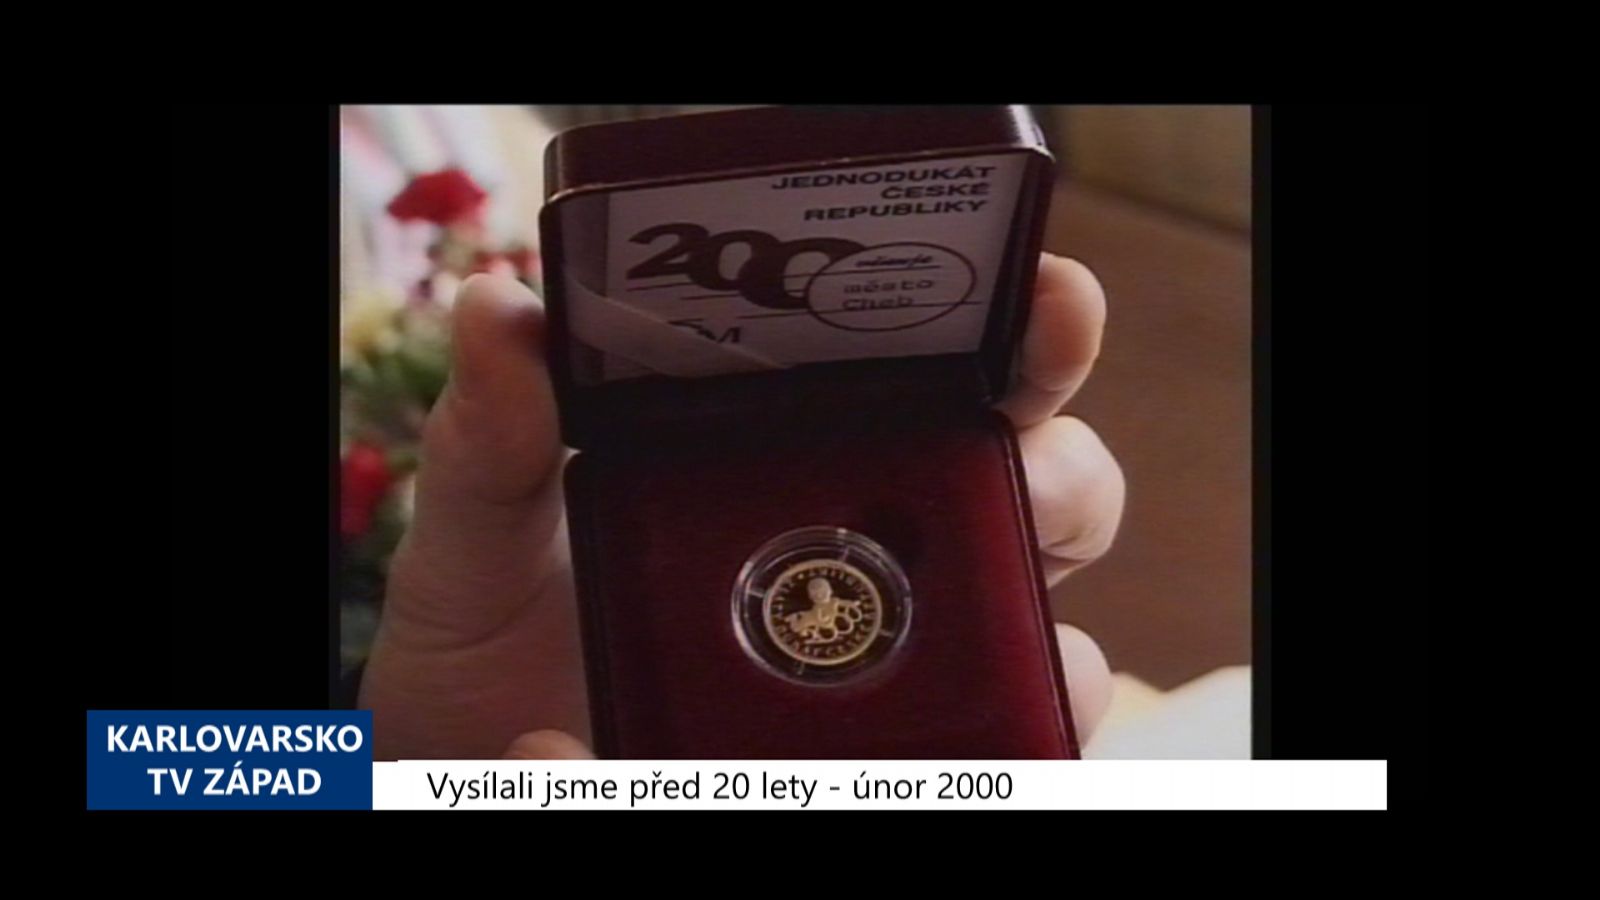 2000 – Cheb: První letošní miminka dostala Jednodukát z ryzího zlata (TV Západ)